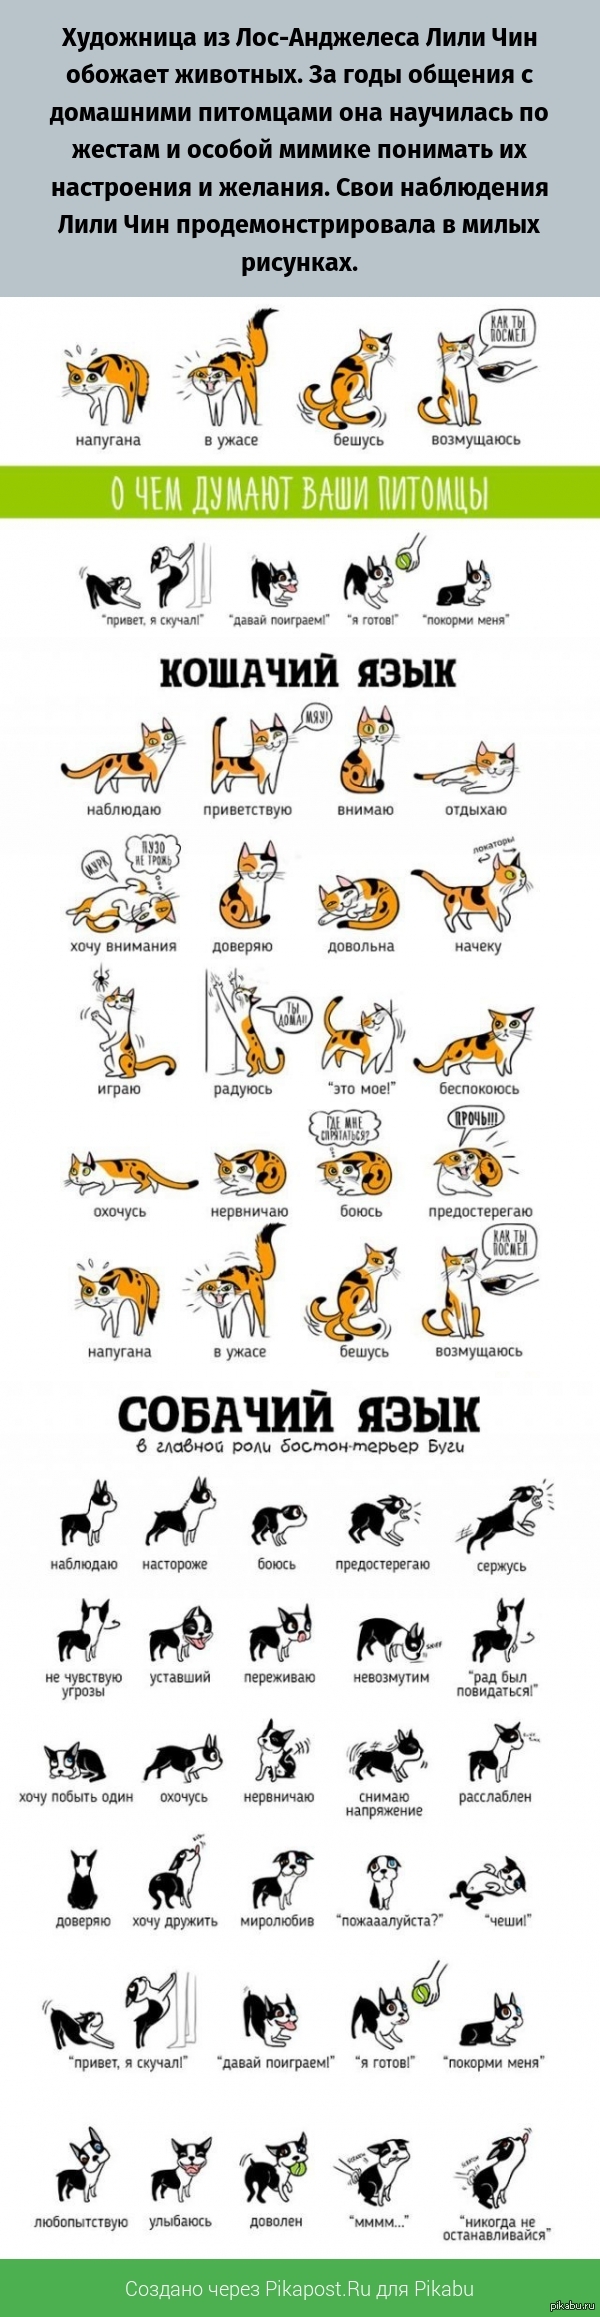 Как переводится кошки